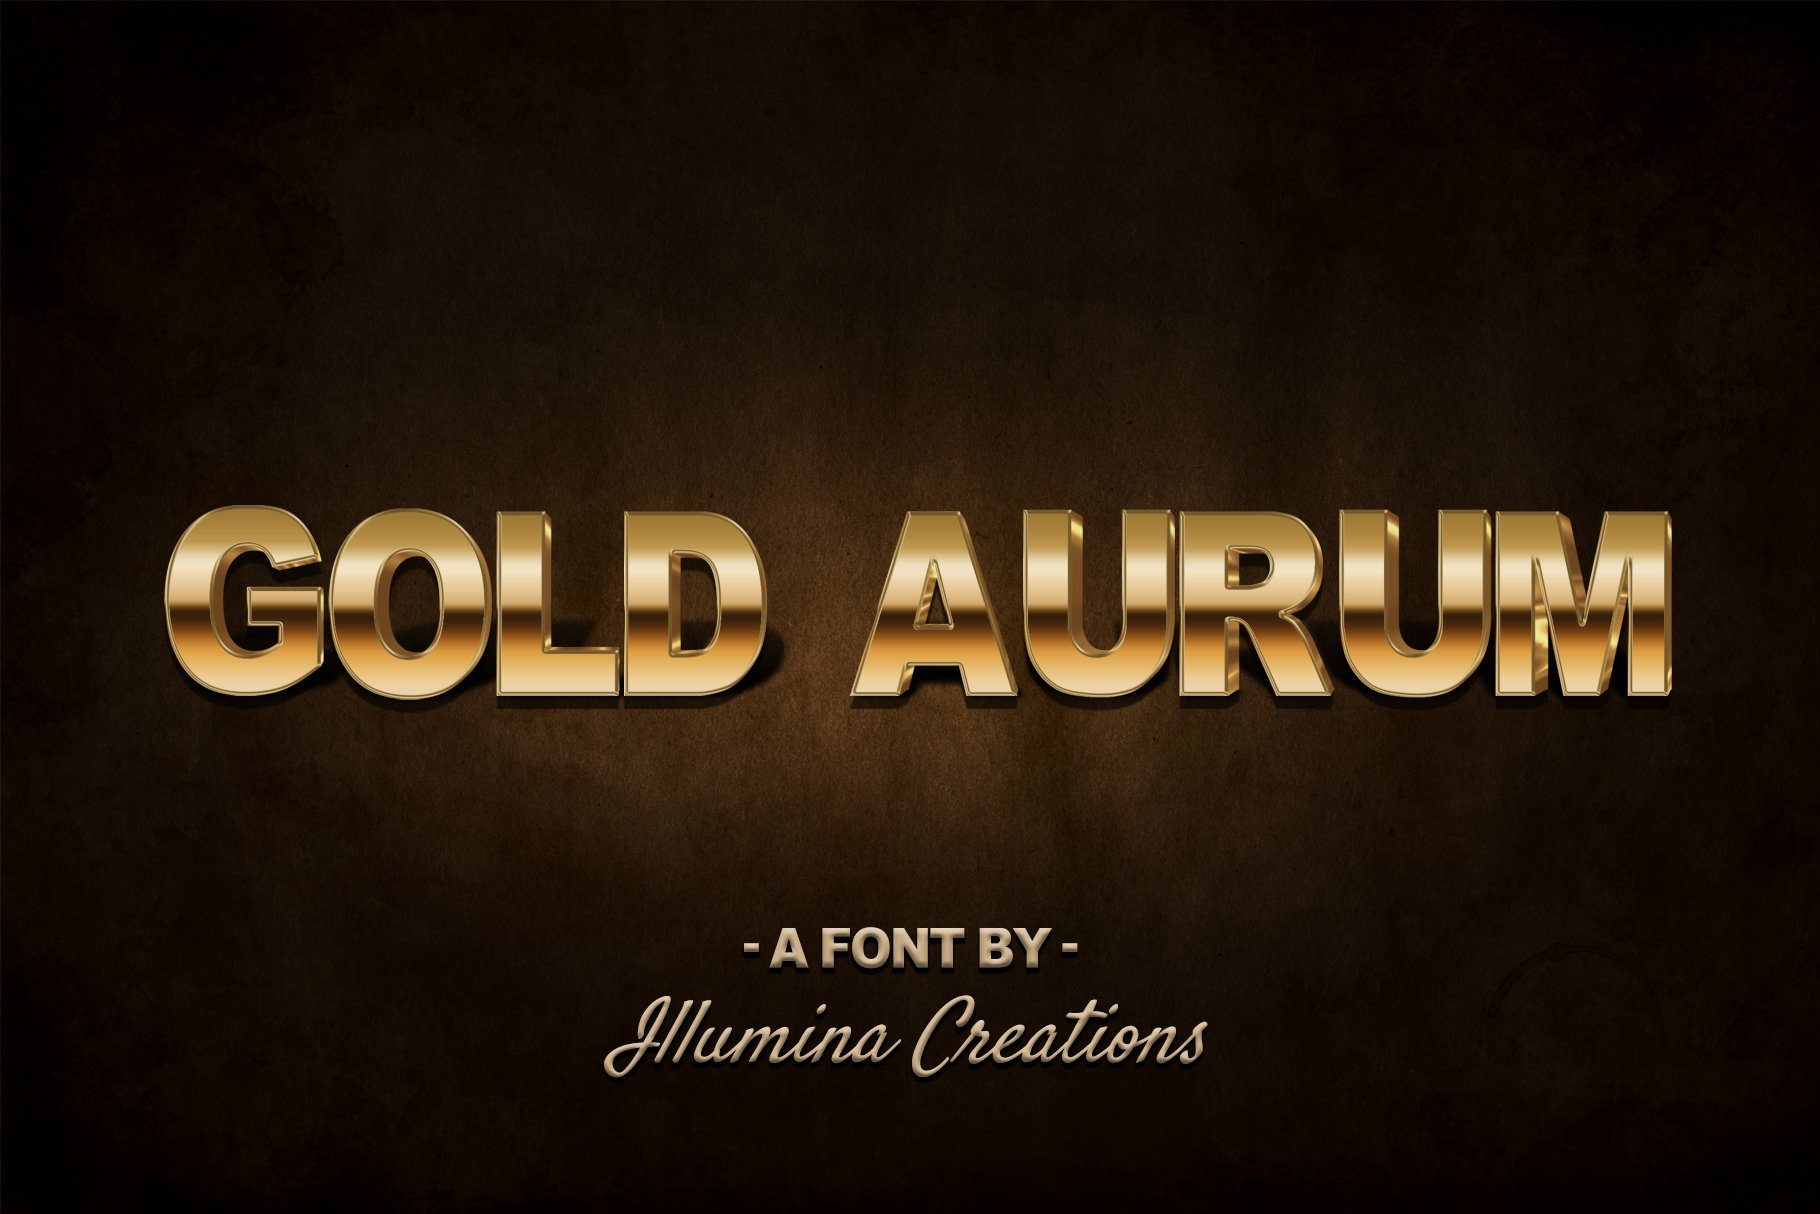 Gold Aurum 3D Font - Bitmap Typeface cover image.